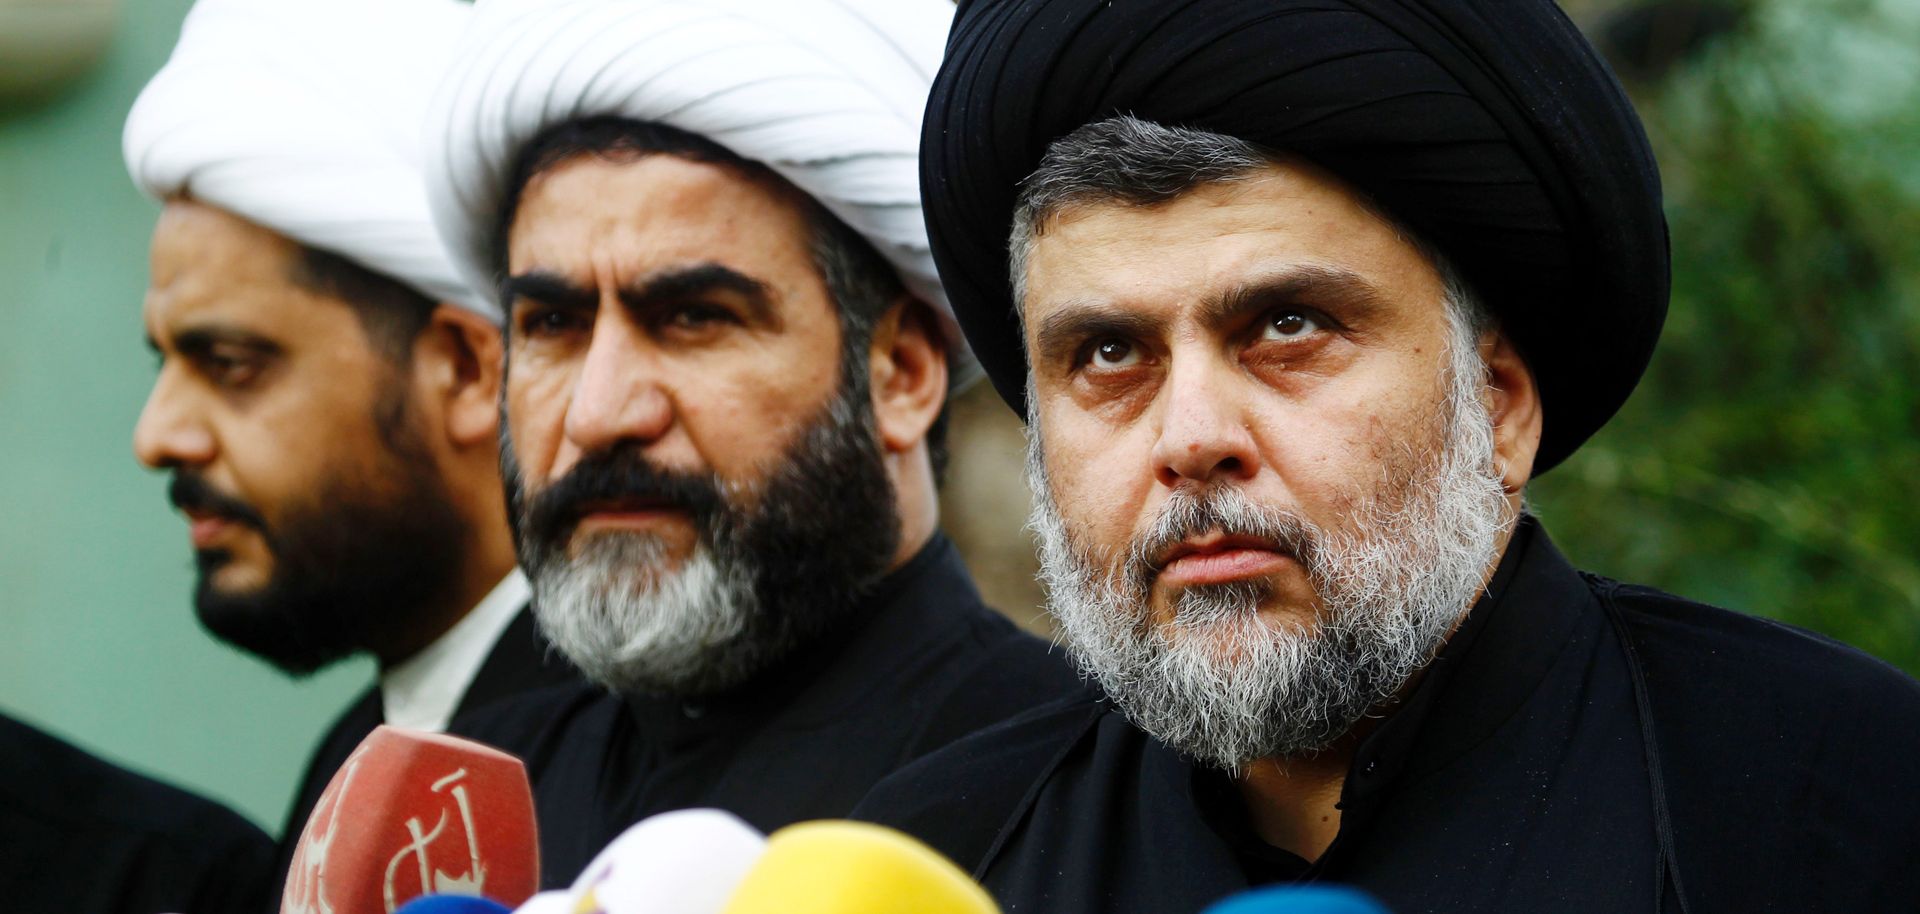 A Divisive Figure Unites Iraq's Shiite Leaders